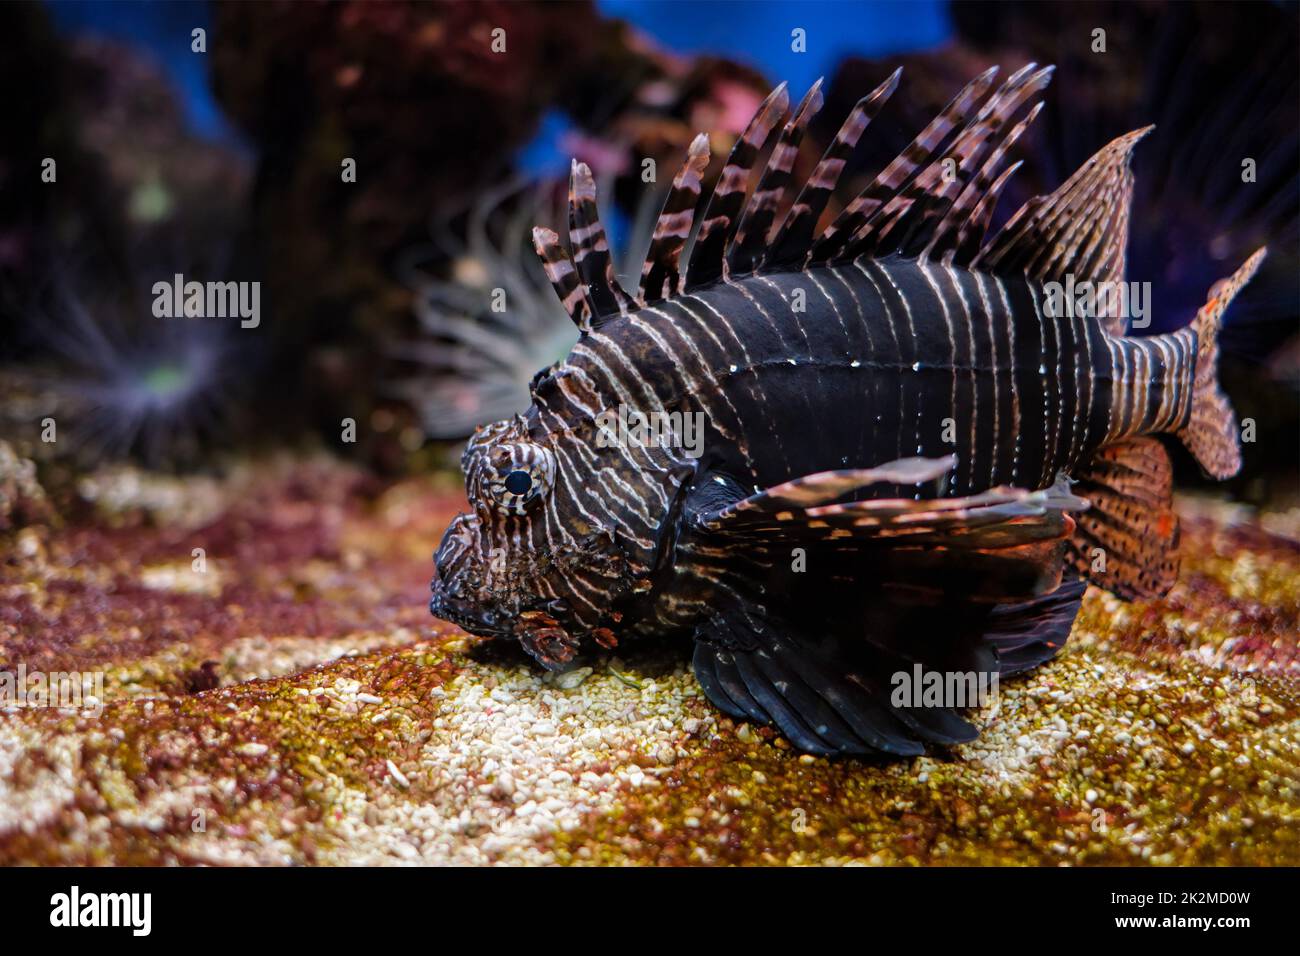 Poisson-lionfish rouge Pterois volitans poisson sous l'eau Banque D'Images